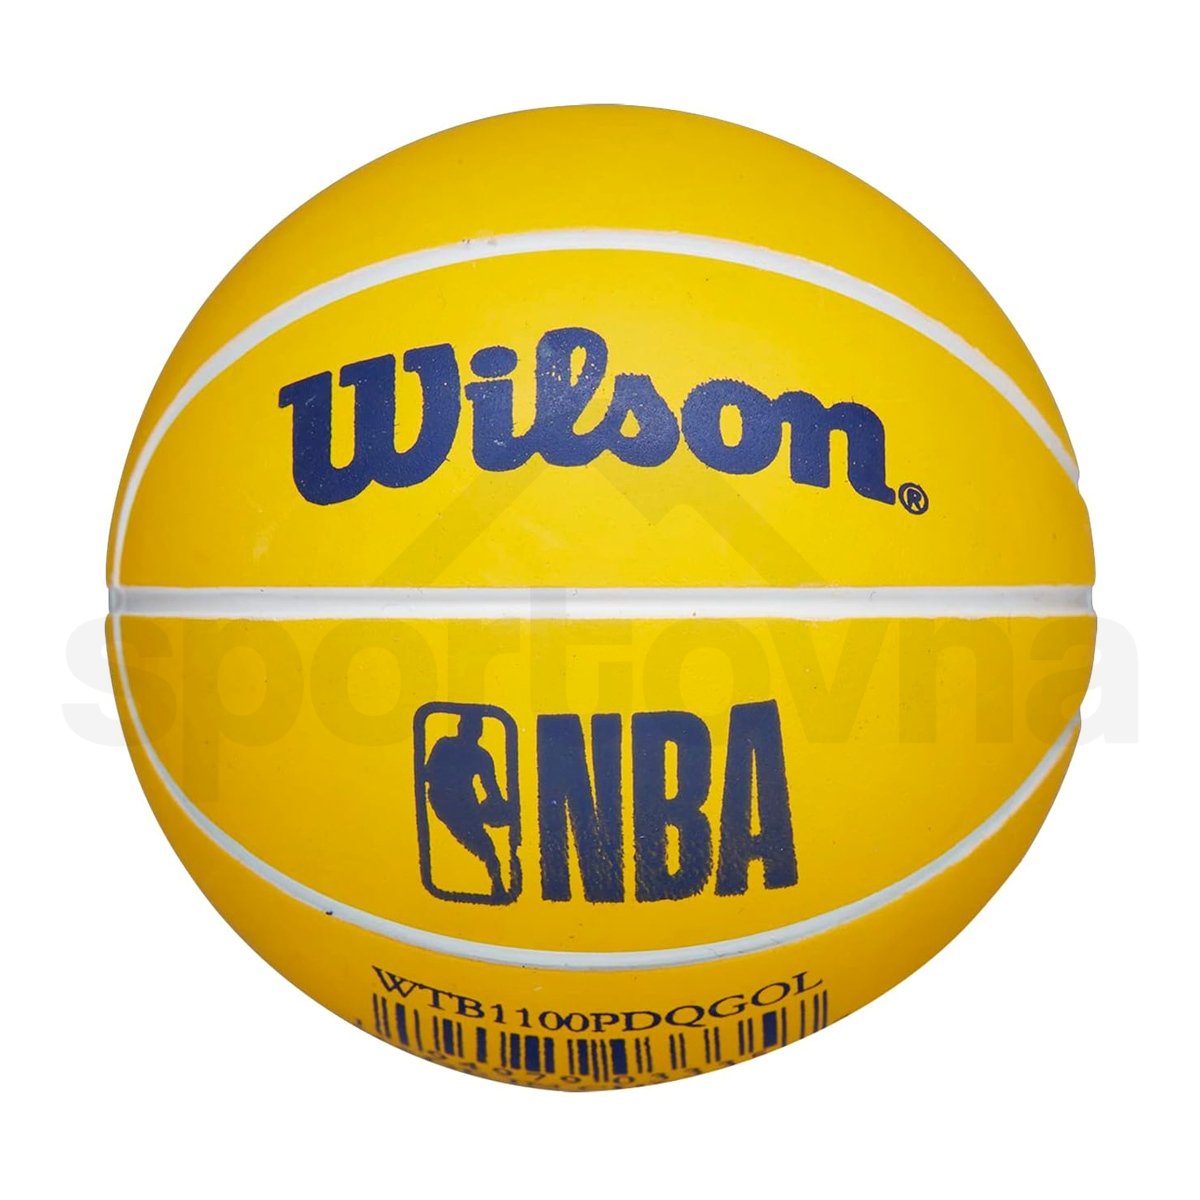 Míč Wilson NBA Dribbler Bskt Gs Warriors - žlutá